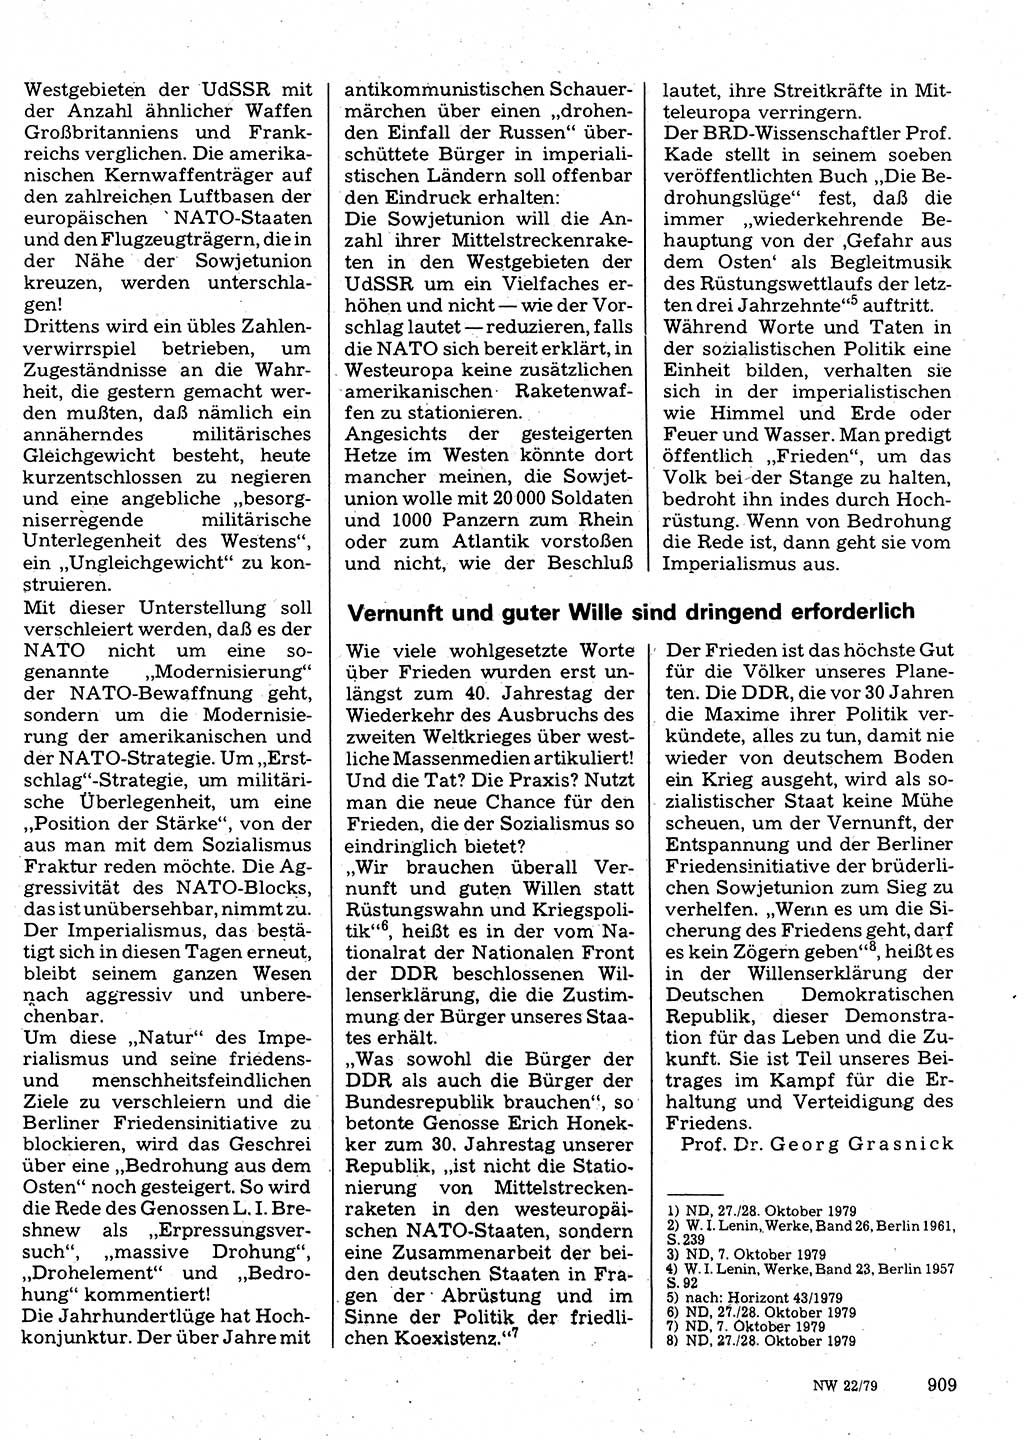 Neuer Weg (NW), Organ des Zentralkomitees (ZK) der SED (Sozialistische Einheitspartei Deutschlands) für Fragen des Parteilebens, 34. Jahrgang [Deutsche Demokratische Republik (DDR)] 1979, Seite 909 (NW ZK SED DDR 1979, S. 909)